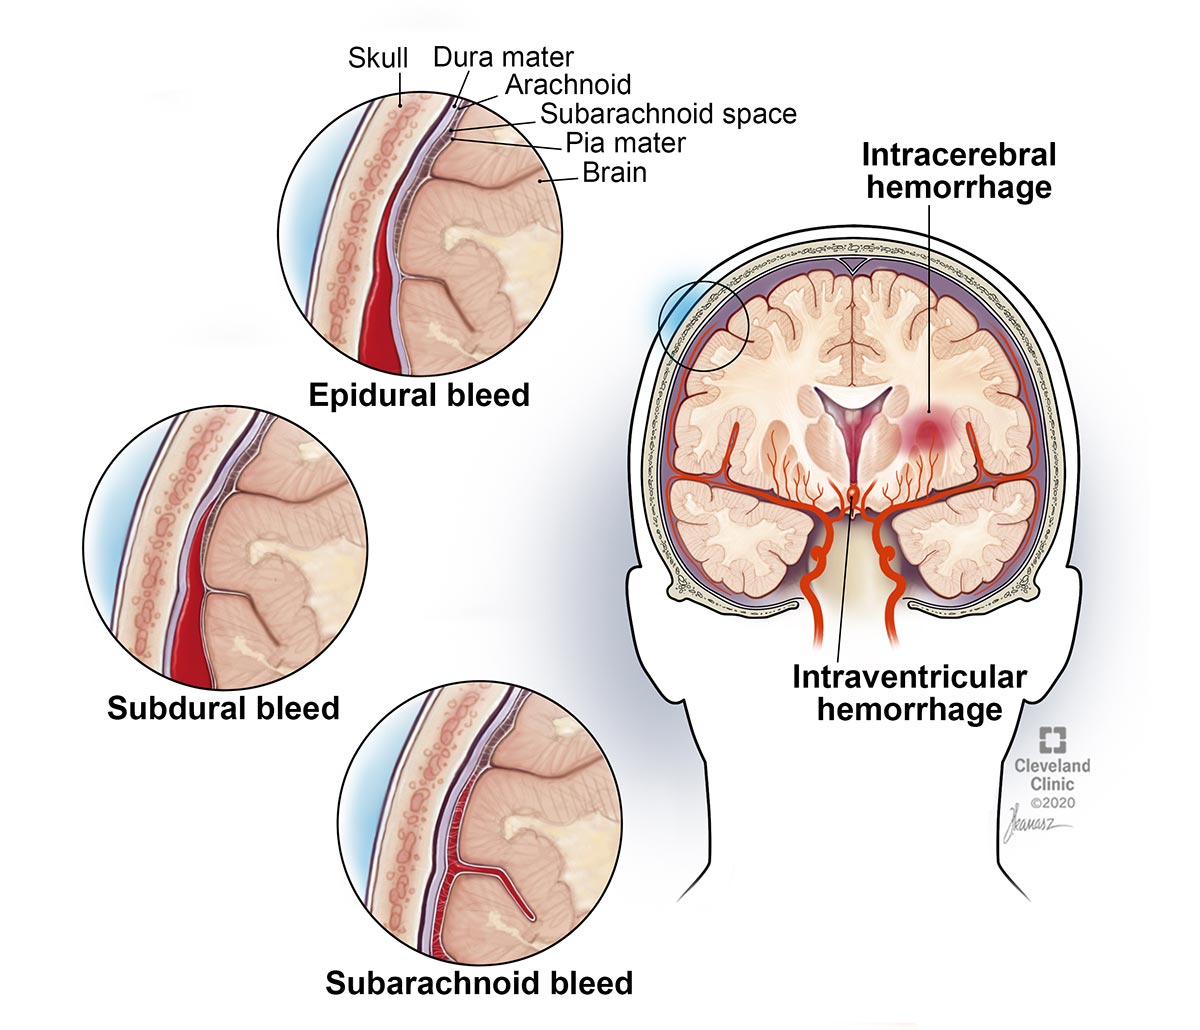 Un ematoma epidurale è un'emorragia cerebrale tra il cranio e la membrana che copre il cervello.